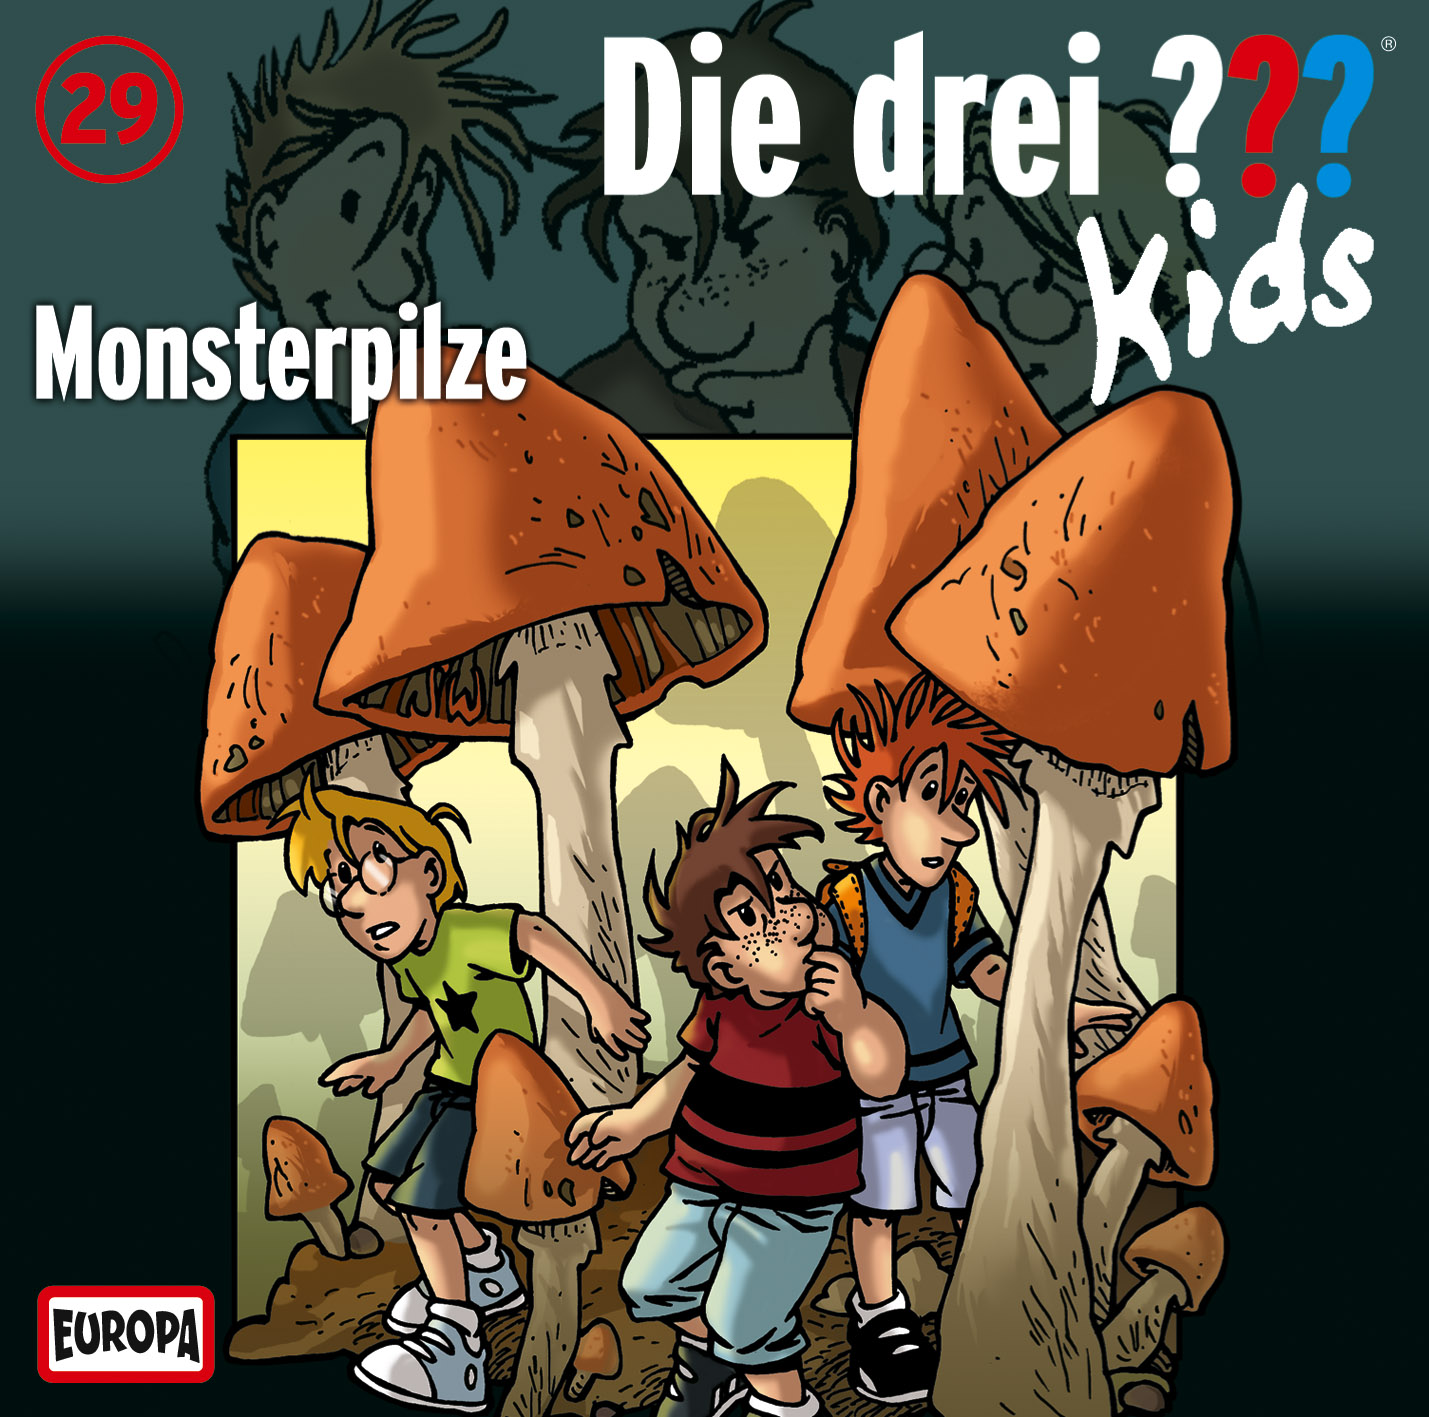 Die Drei ??? (Fragezeichen) Kids, Hörspiel-Folge 29: Monsterpilze